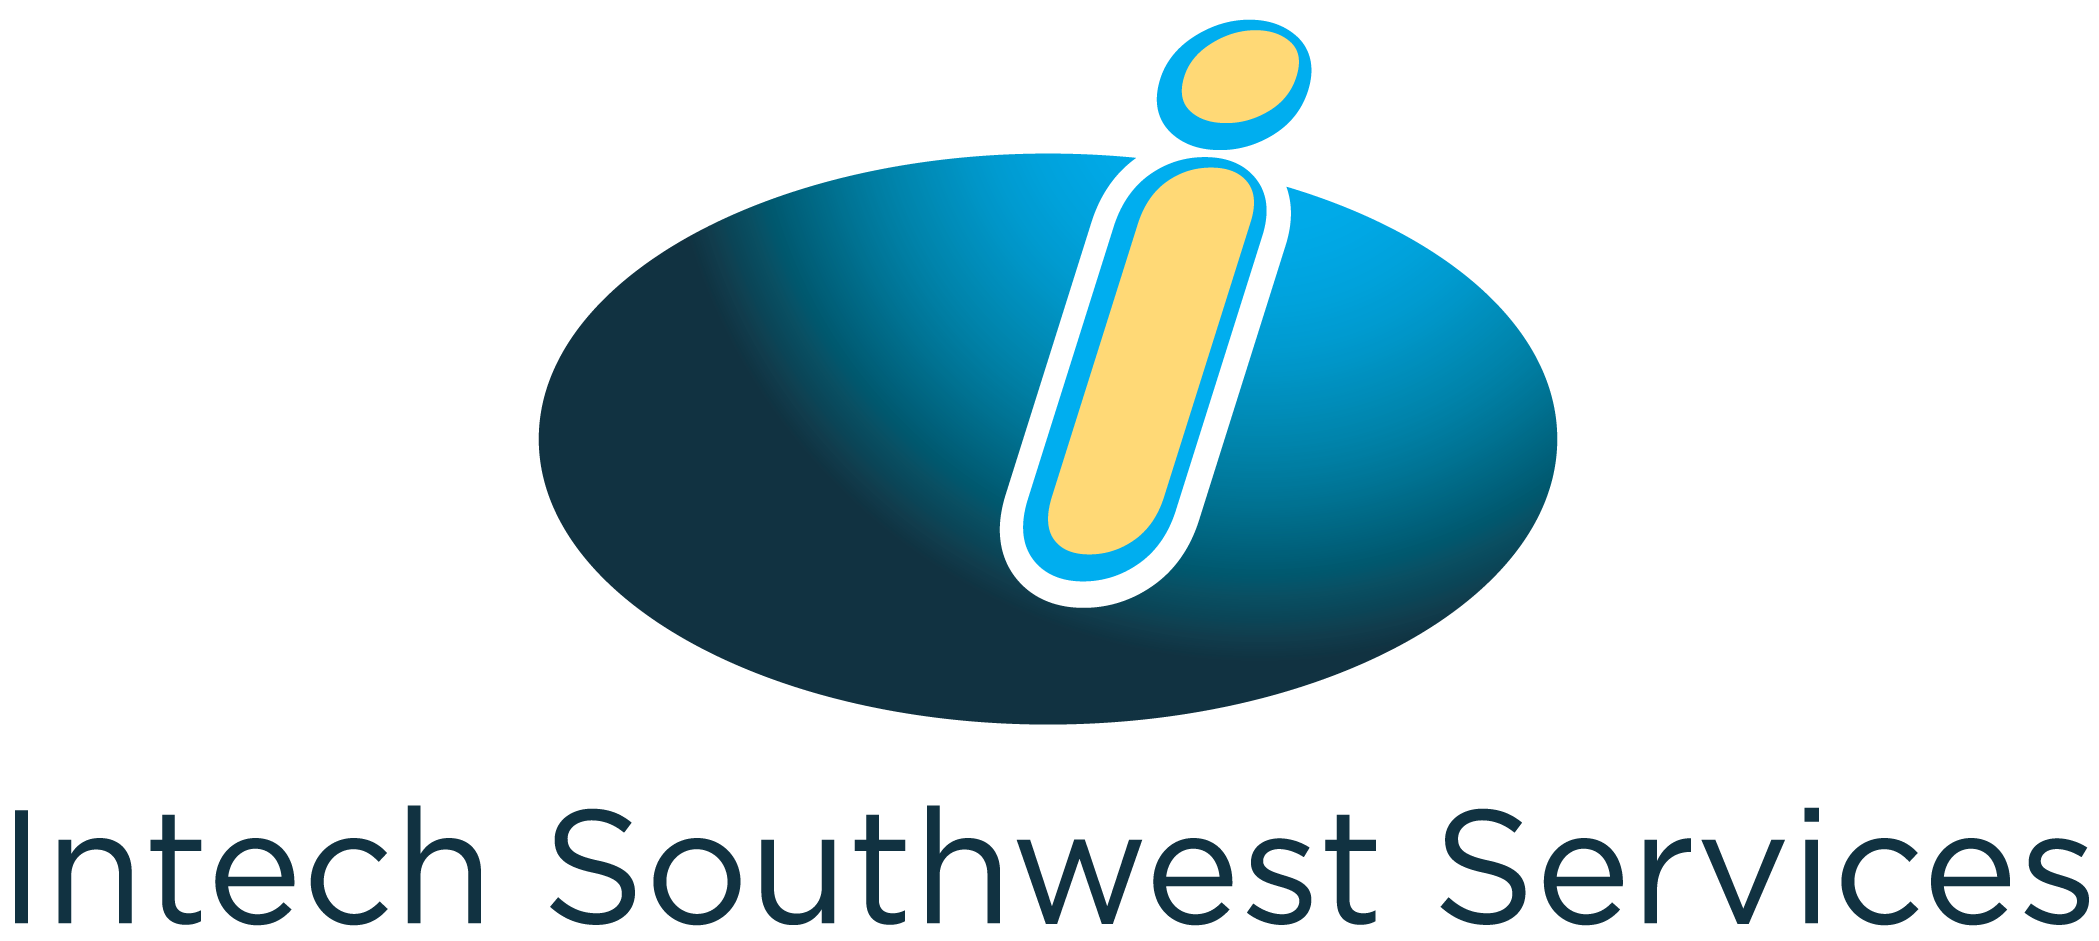 Intech Southwest Services